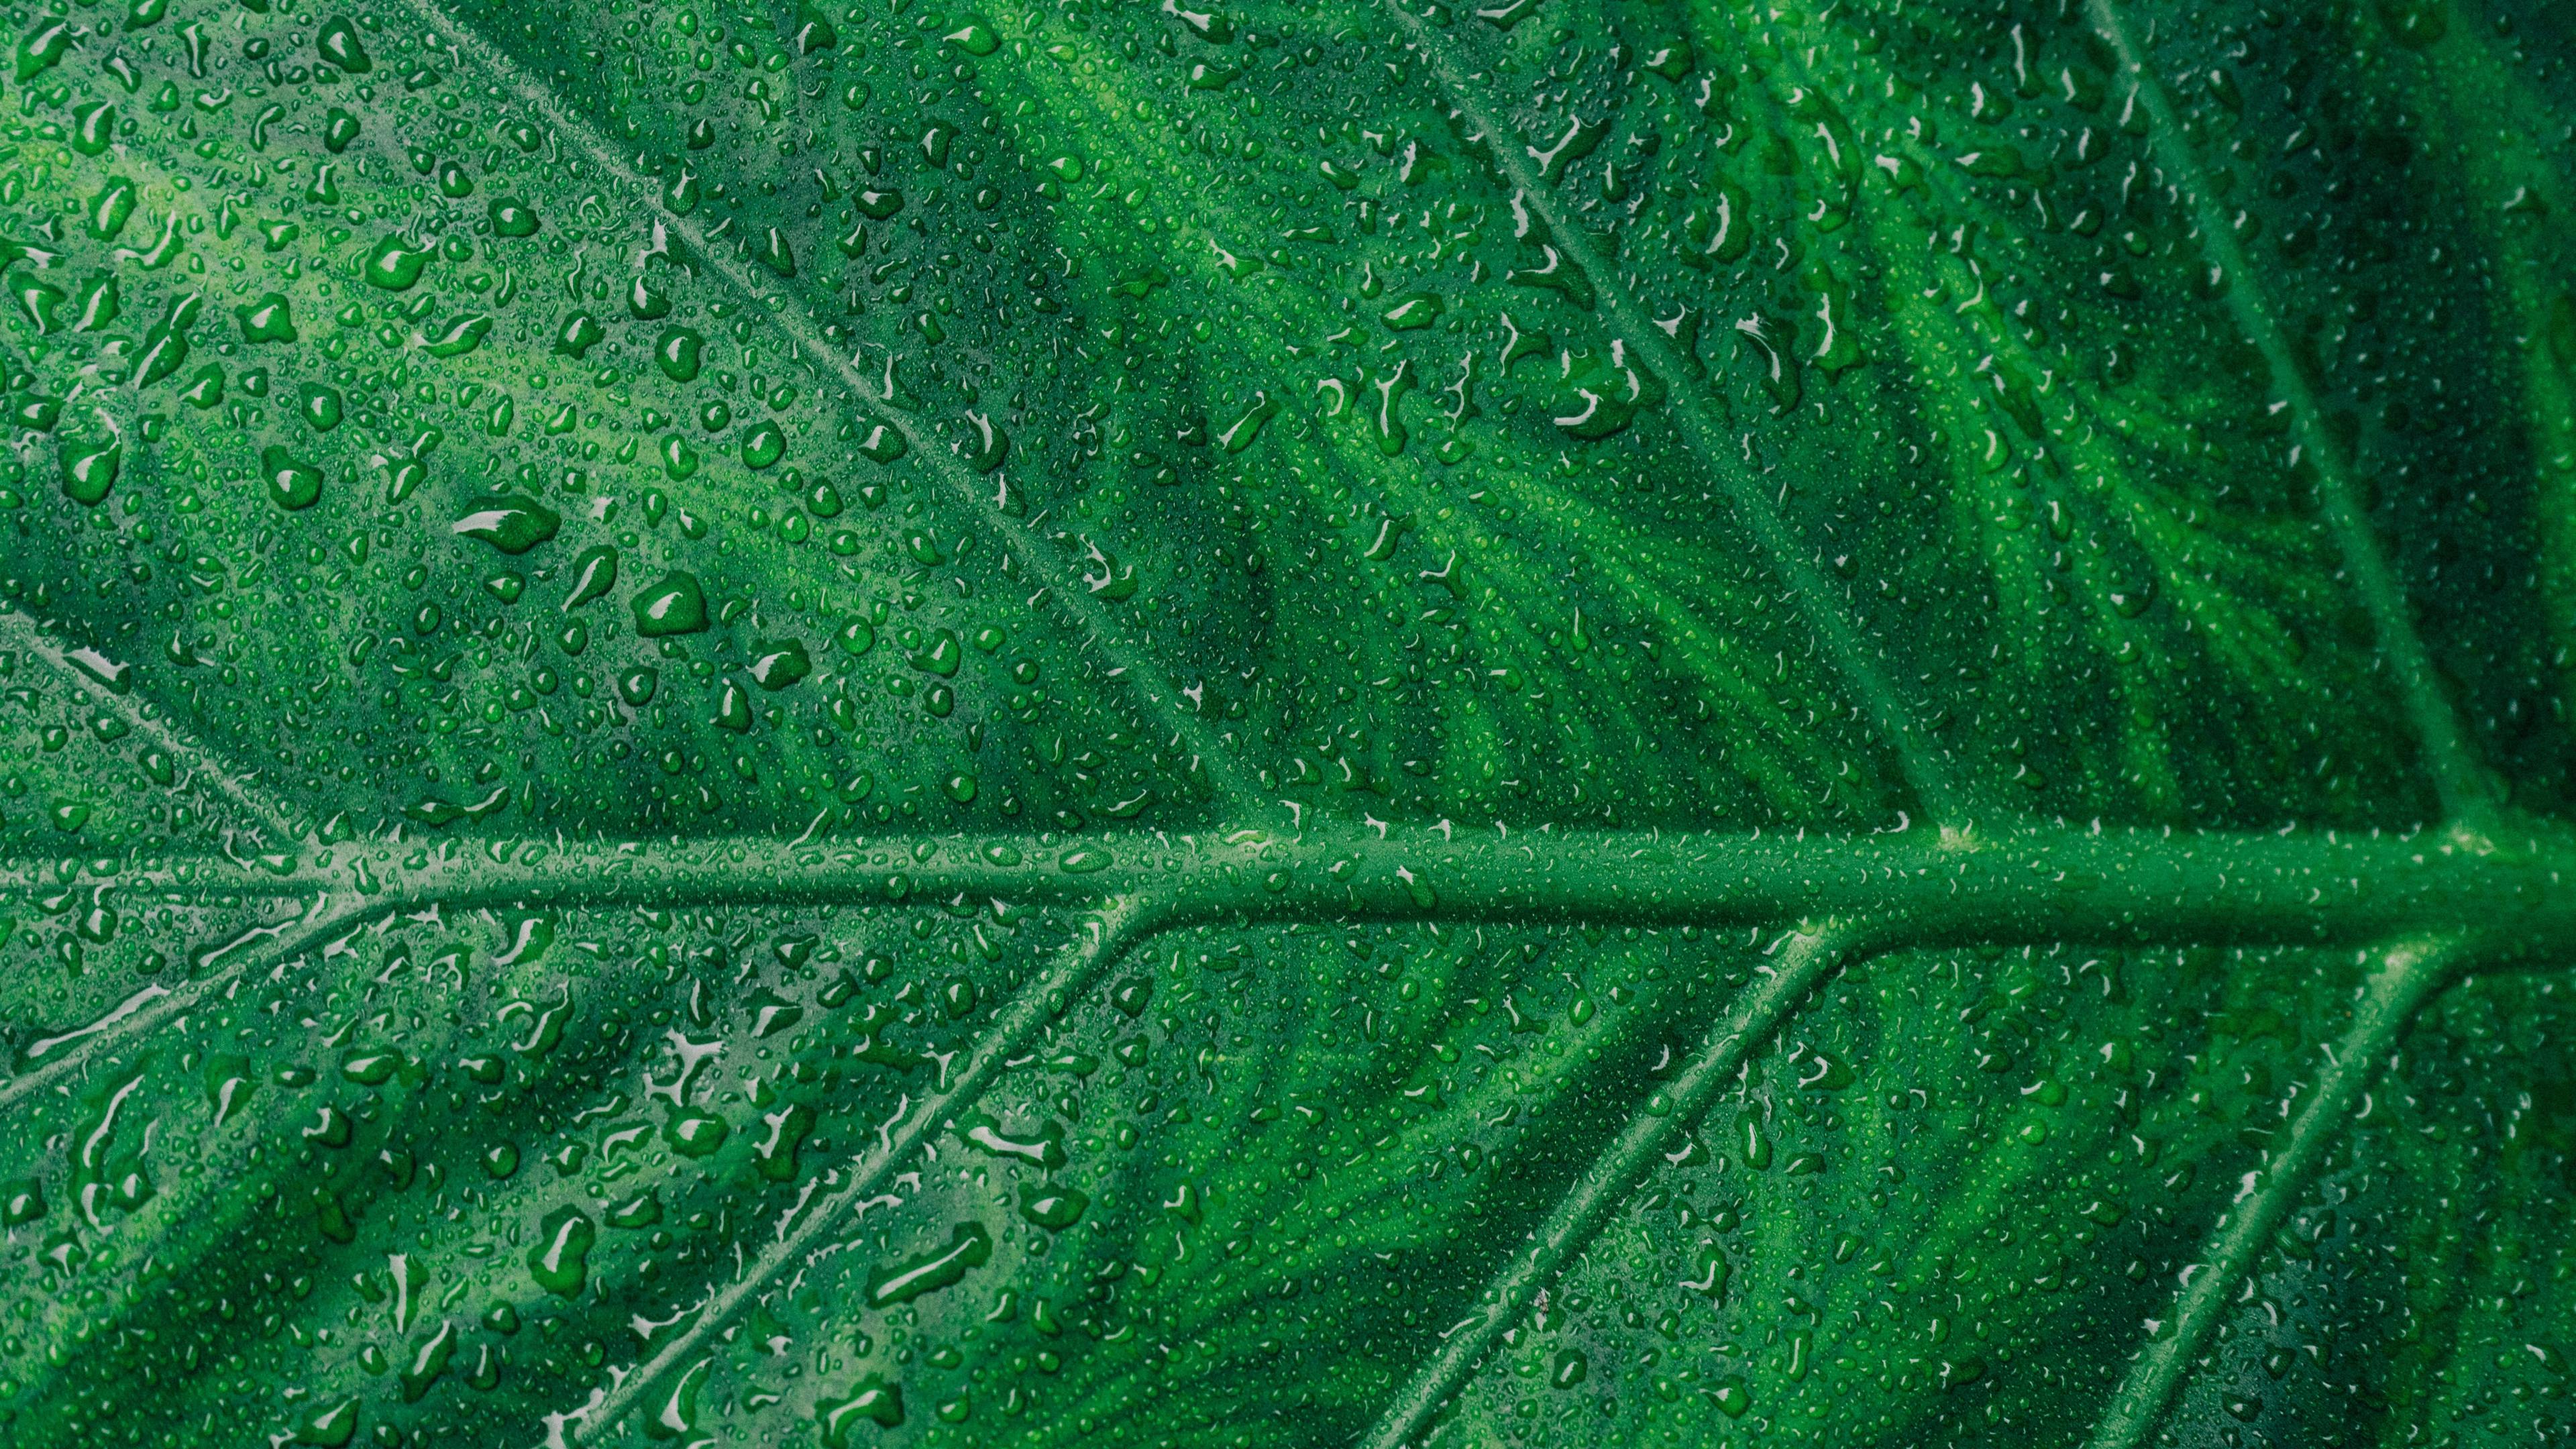 Wallpaper 4k Droplets On Green Leaf Macro 4k 4k Wallpaper, 5k Wallpaper, Hd Wallpaper, Leaf Wallpaper, Macro Wallpaper, Macro Wallpaperdrops Wallpaper, Water Wallpaper